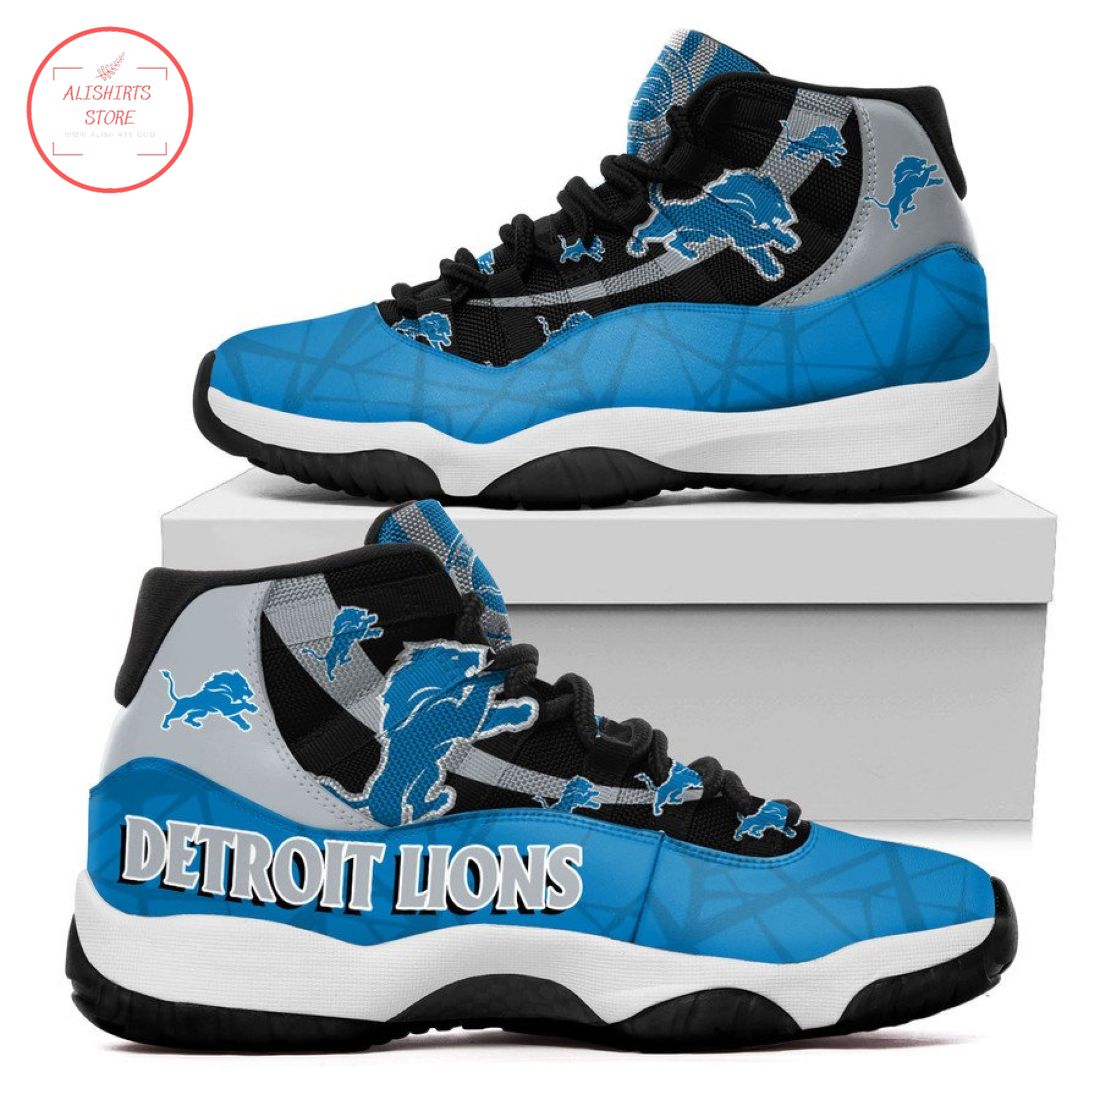 NFL Detroit Lions New Air Jordan 11 Sneakers Shoes